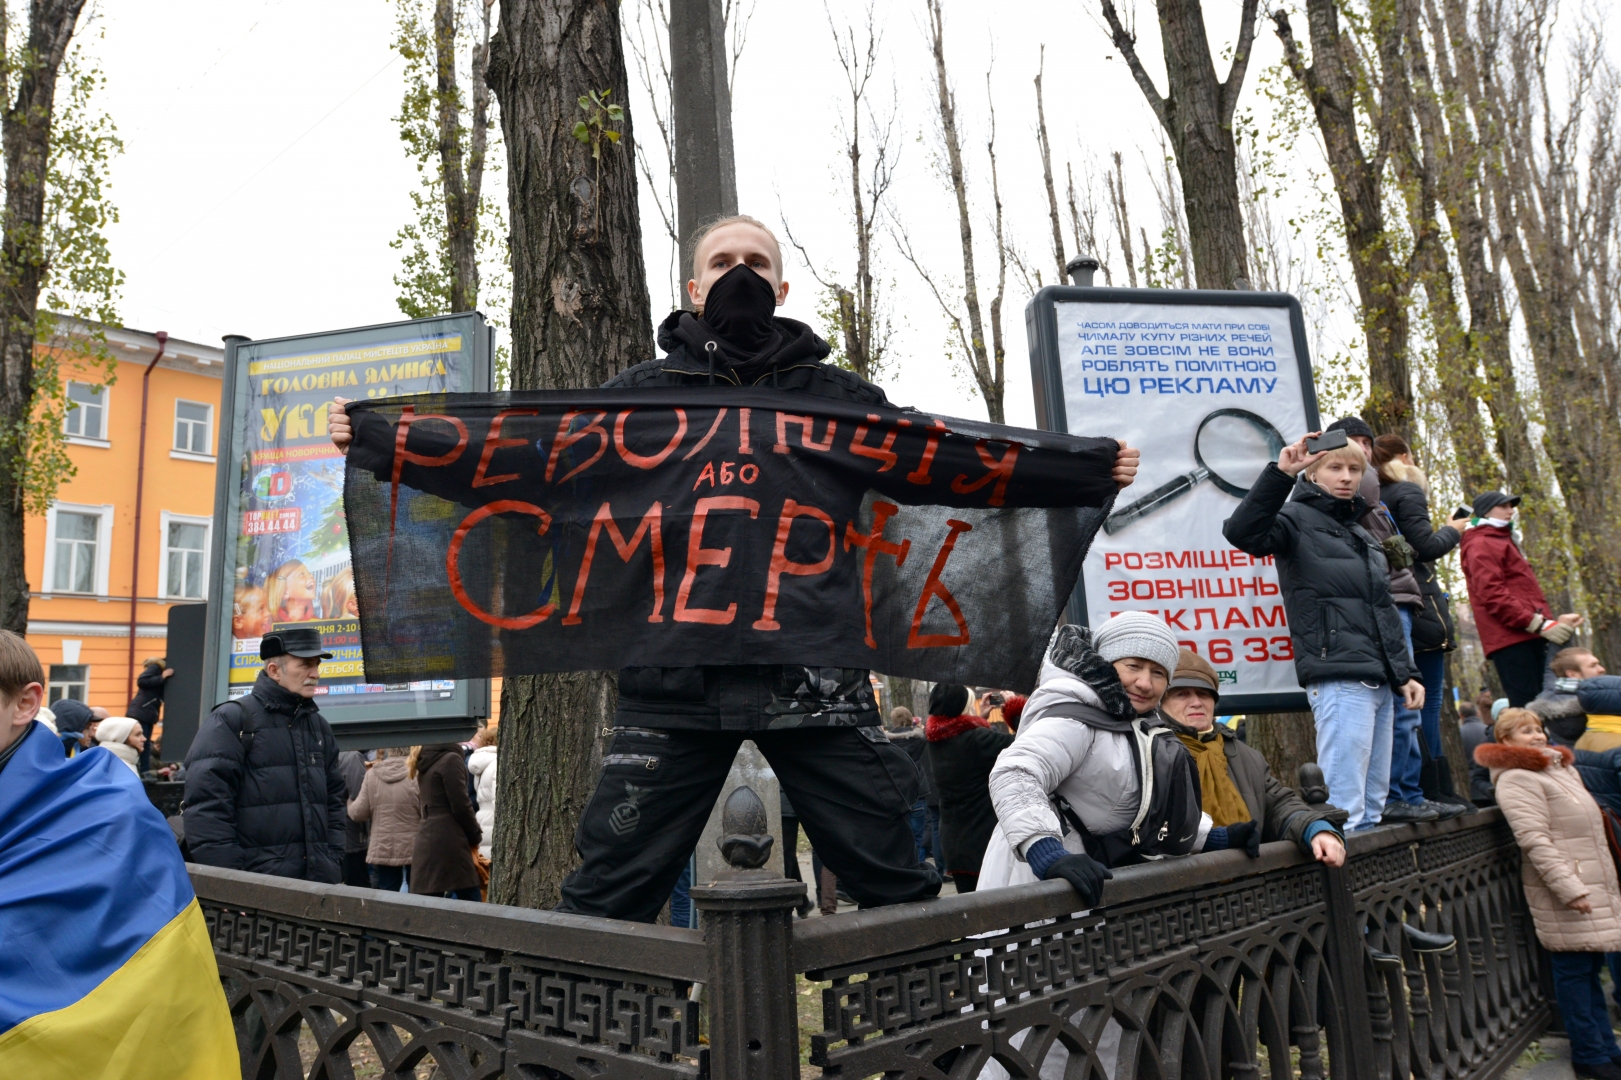 Порошенко назвал «преступлением» разговоры о госперевороте-2014 в Киеве